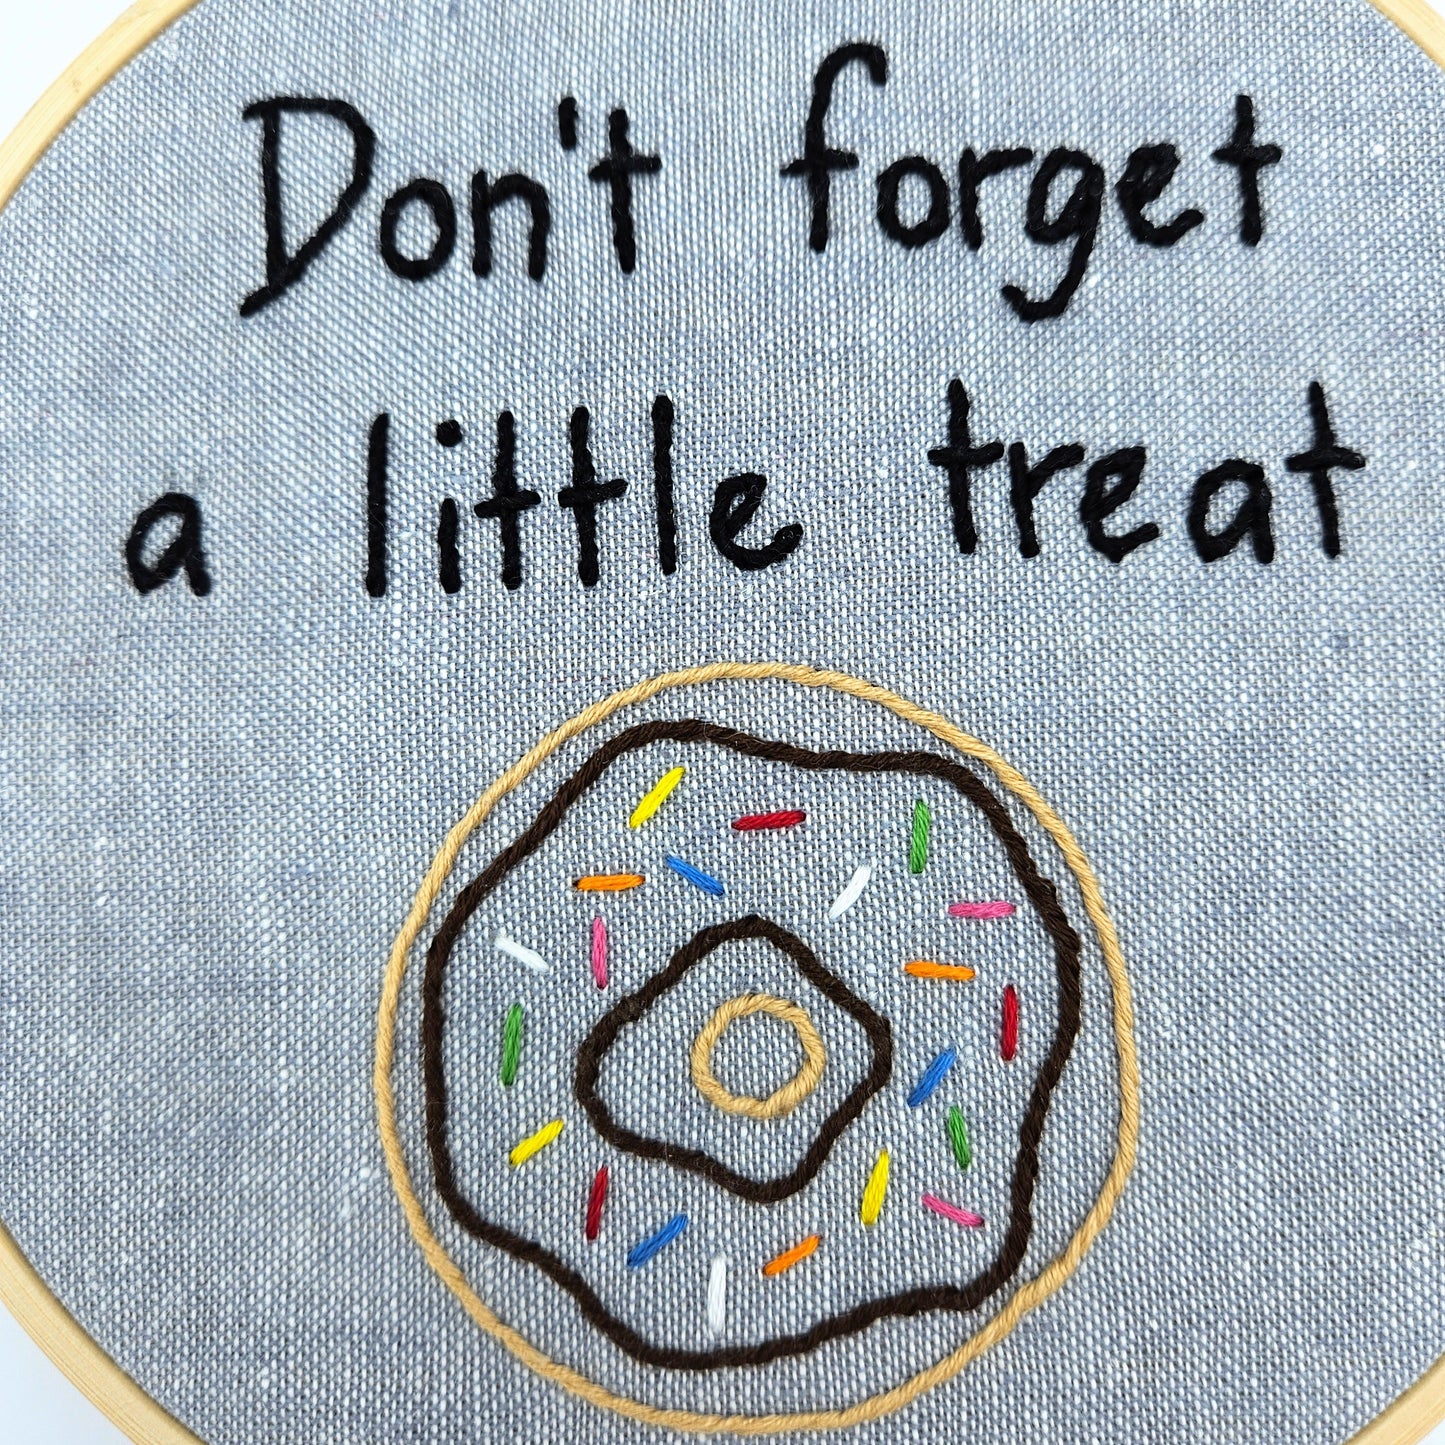 Doughnut "Little Treat" Embroidery Hoop Art